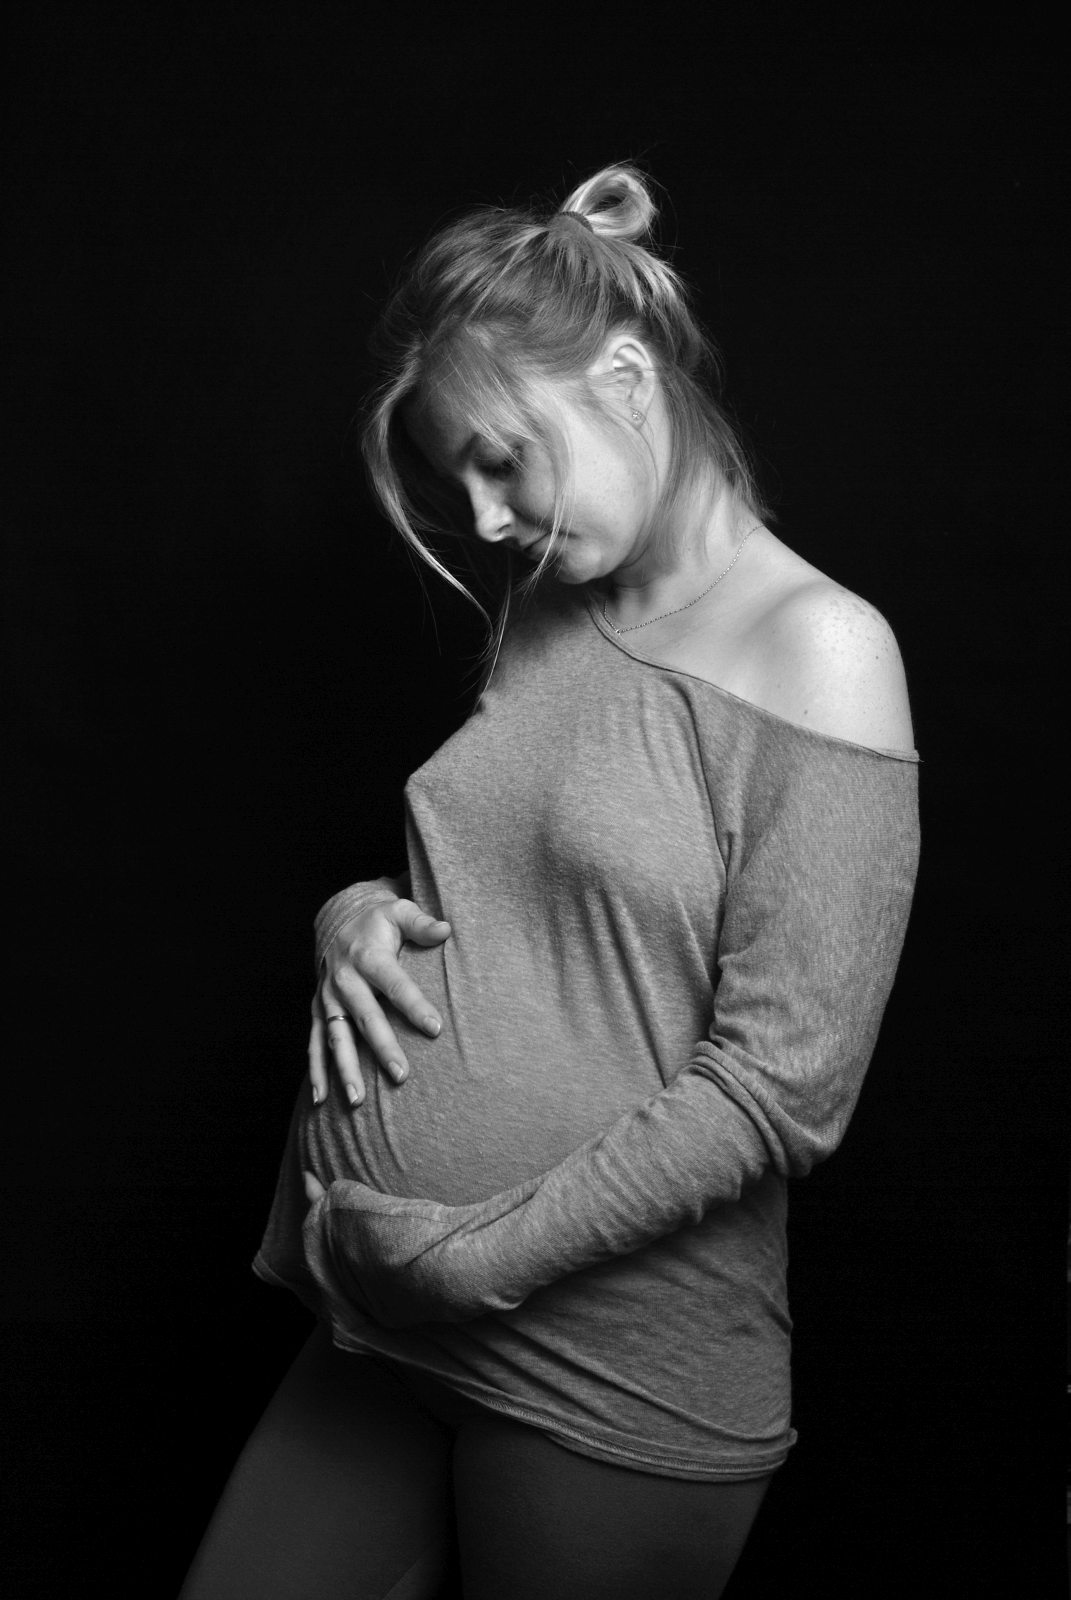 pregnancy-photographer-iceland_adam-dereszkiewicz_9735bw